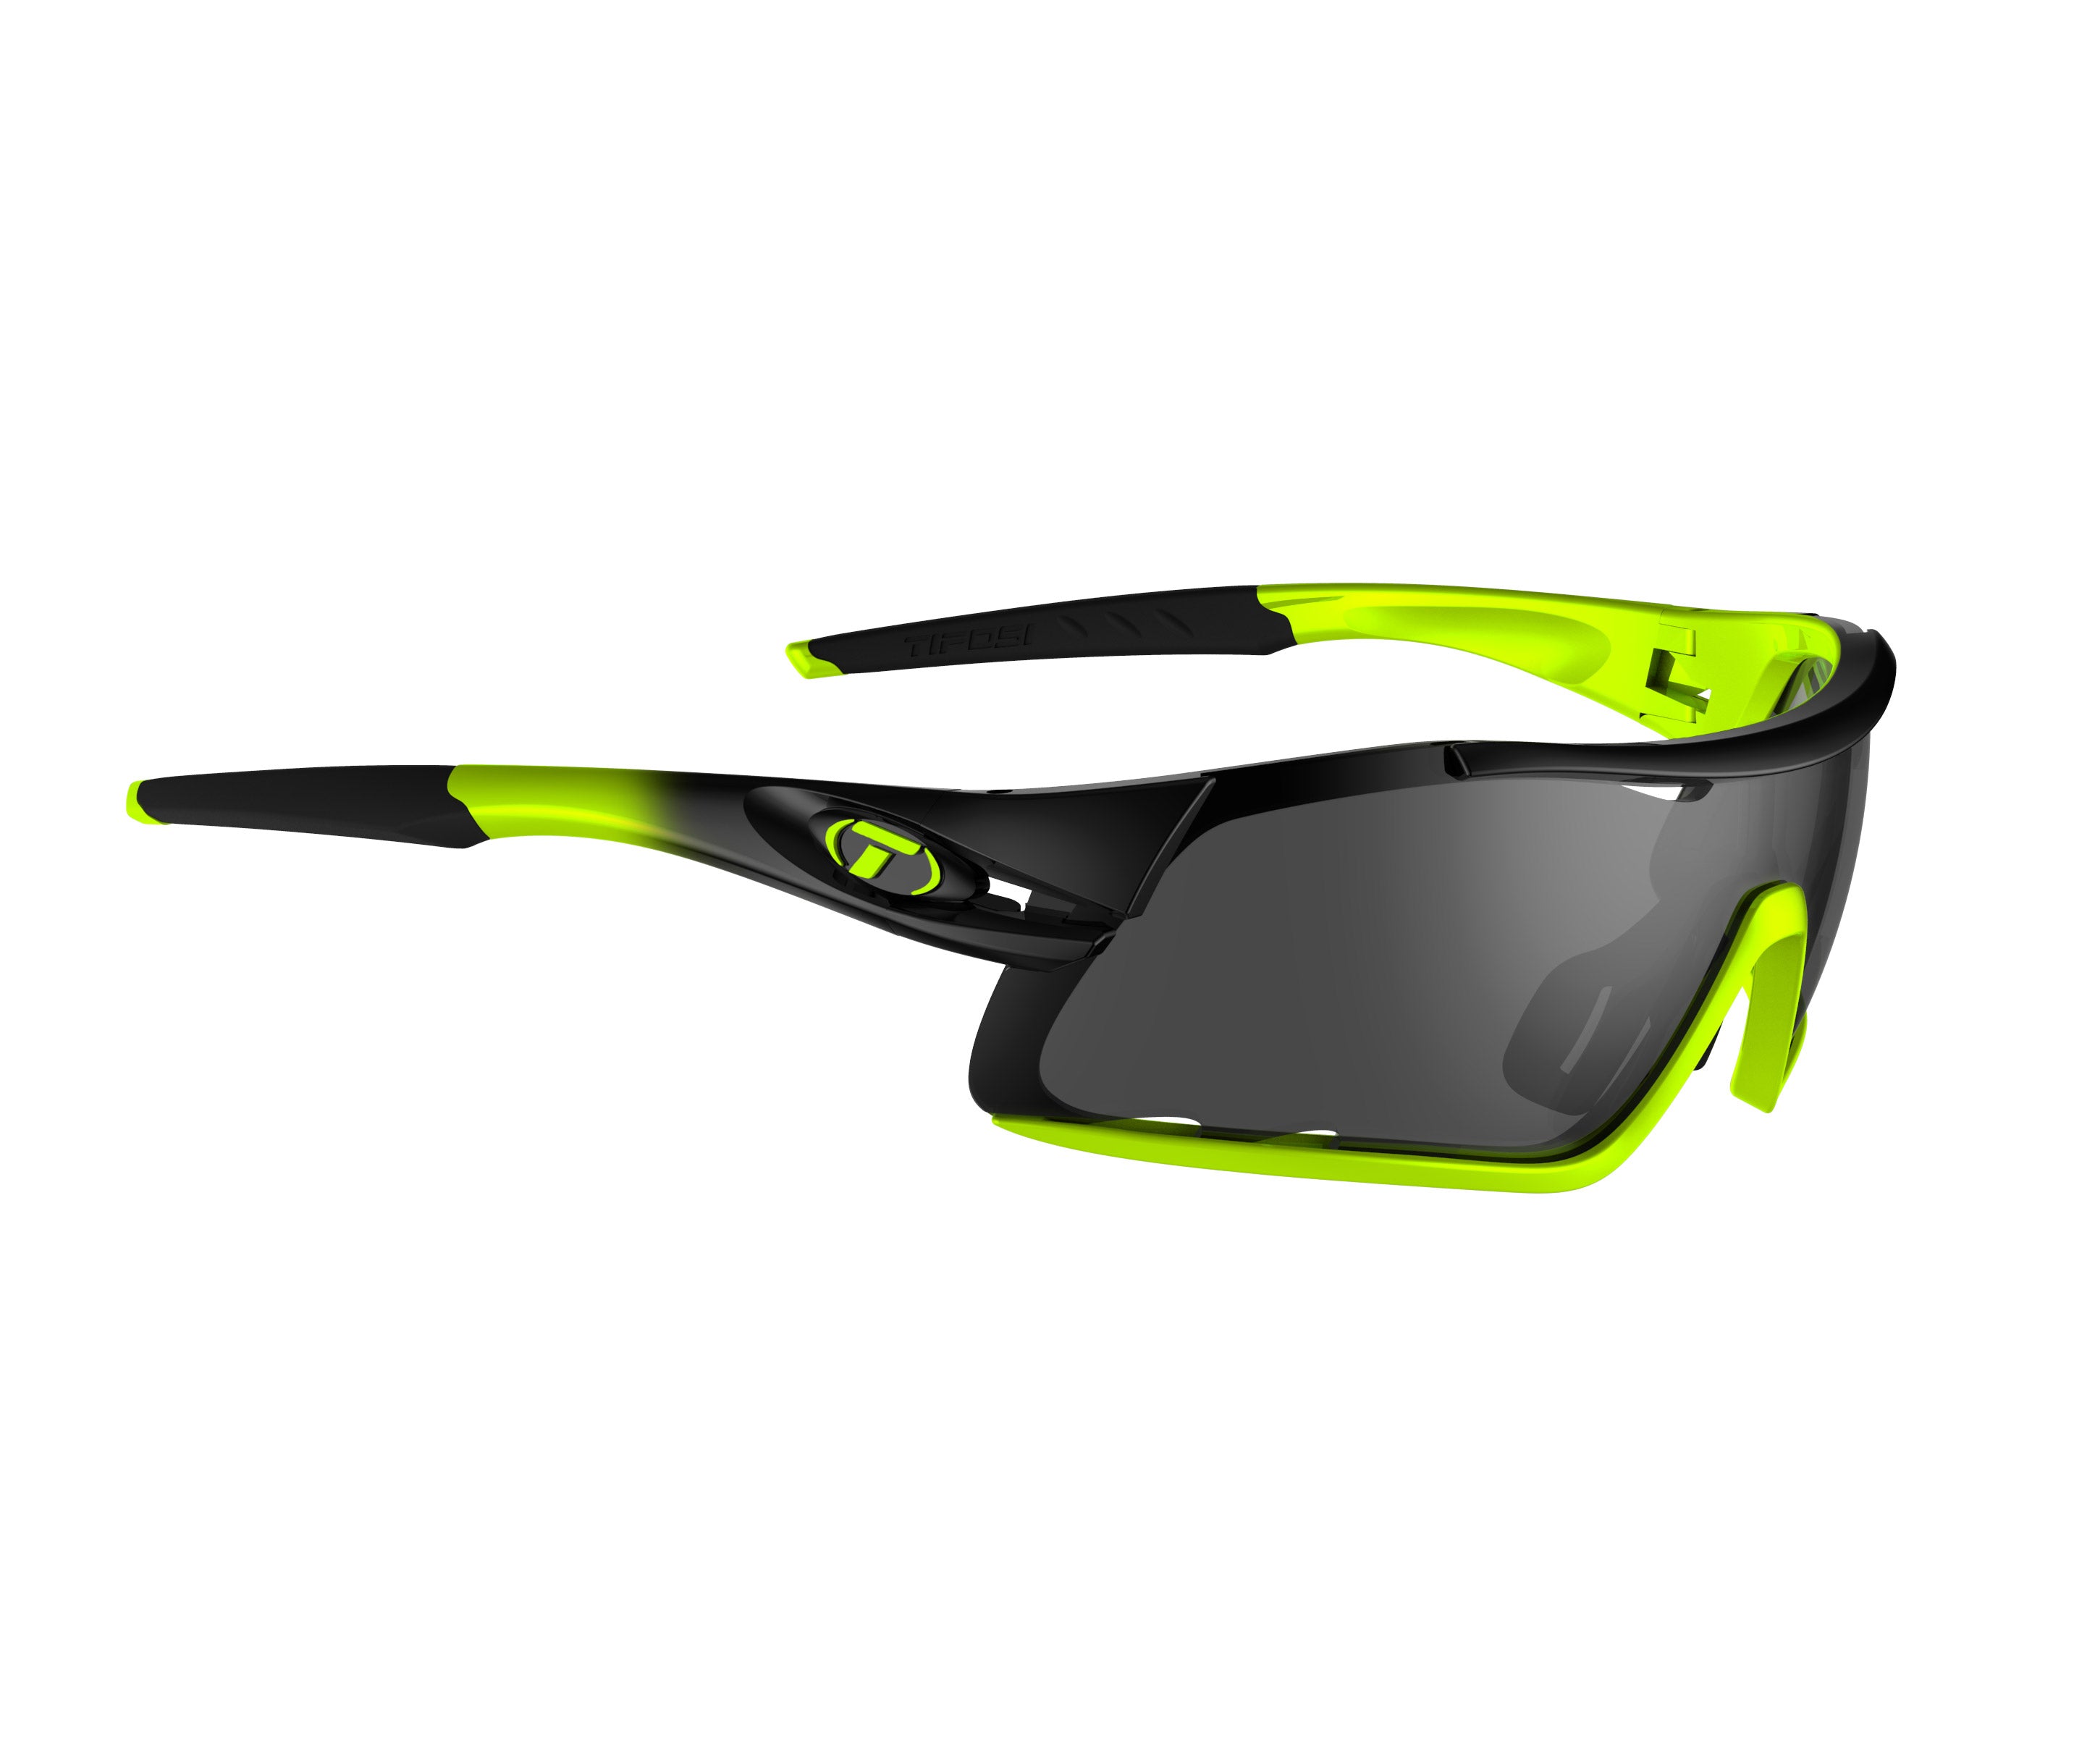 Gafas de sol TIFOSI Davos Race Neon (incluye varias lentes)